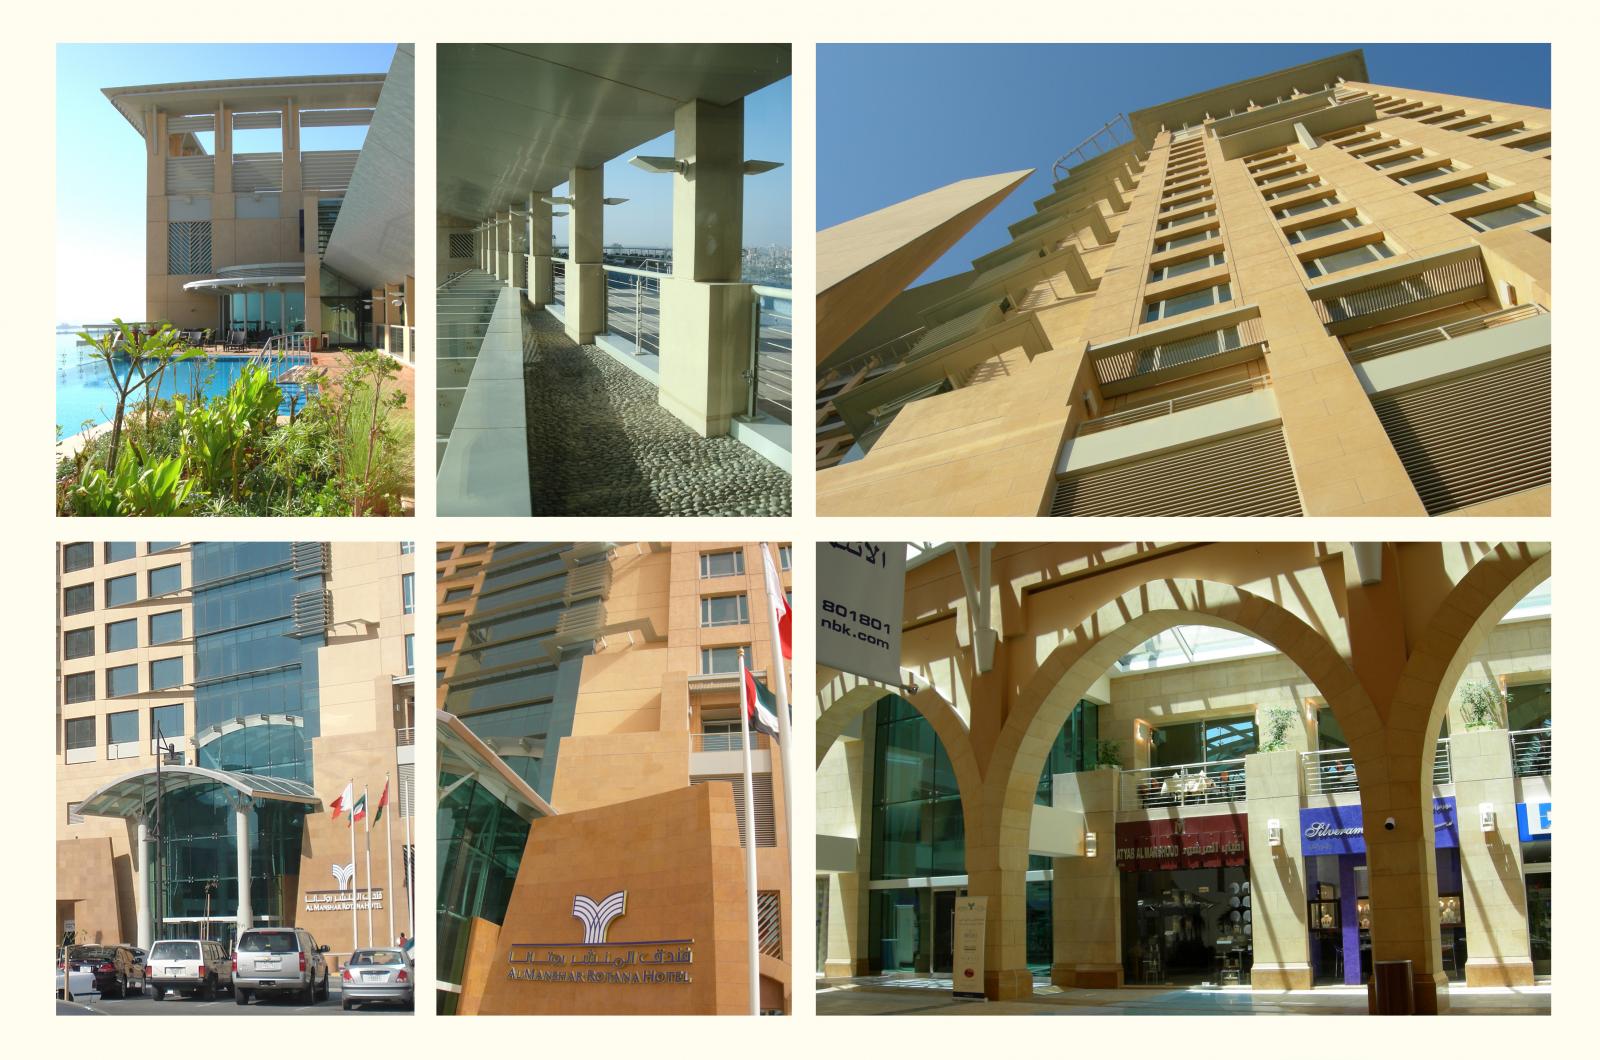 Al-Manshar Rotana Hotel Tower (200 keys)